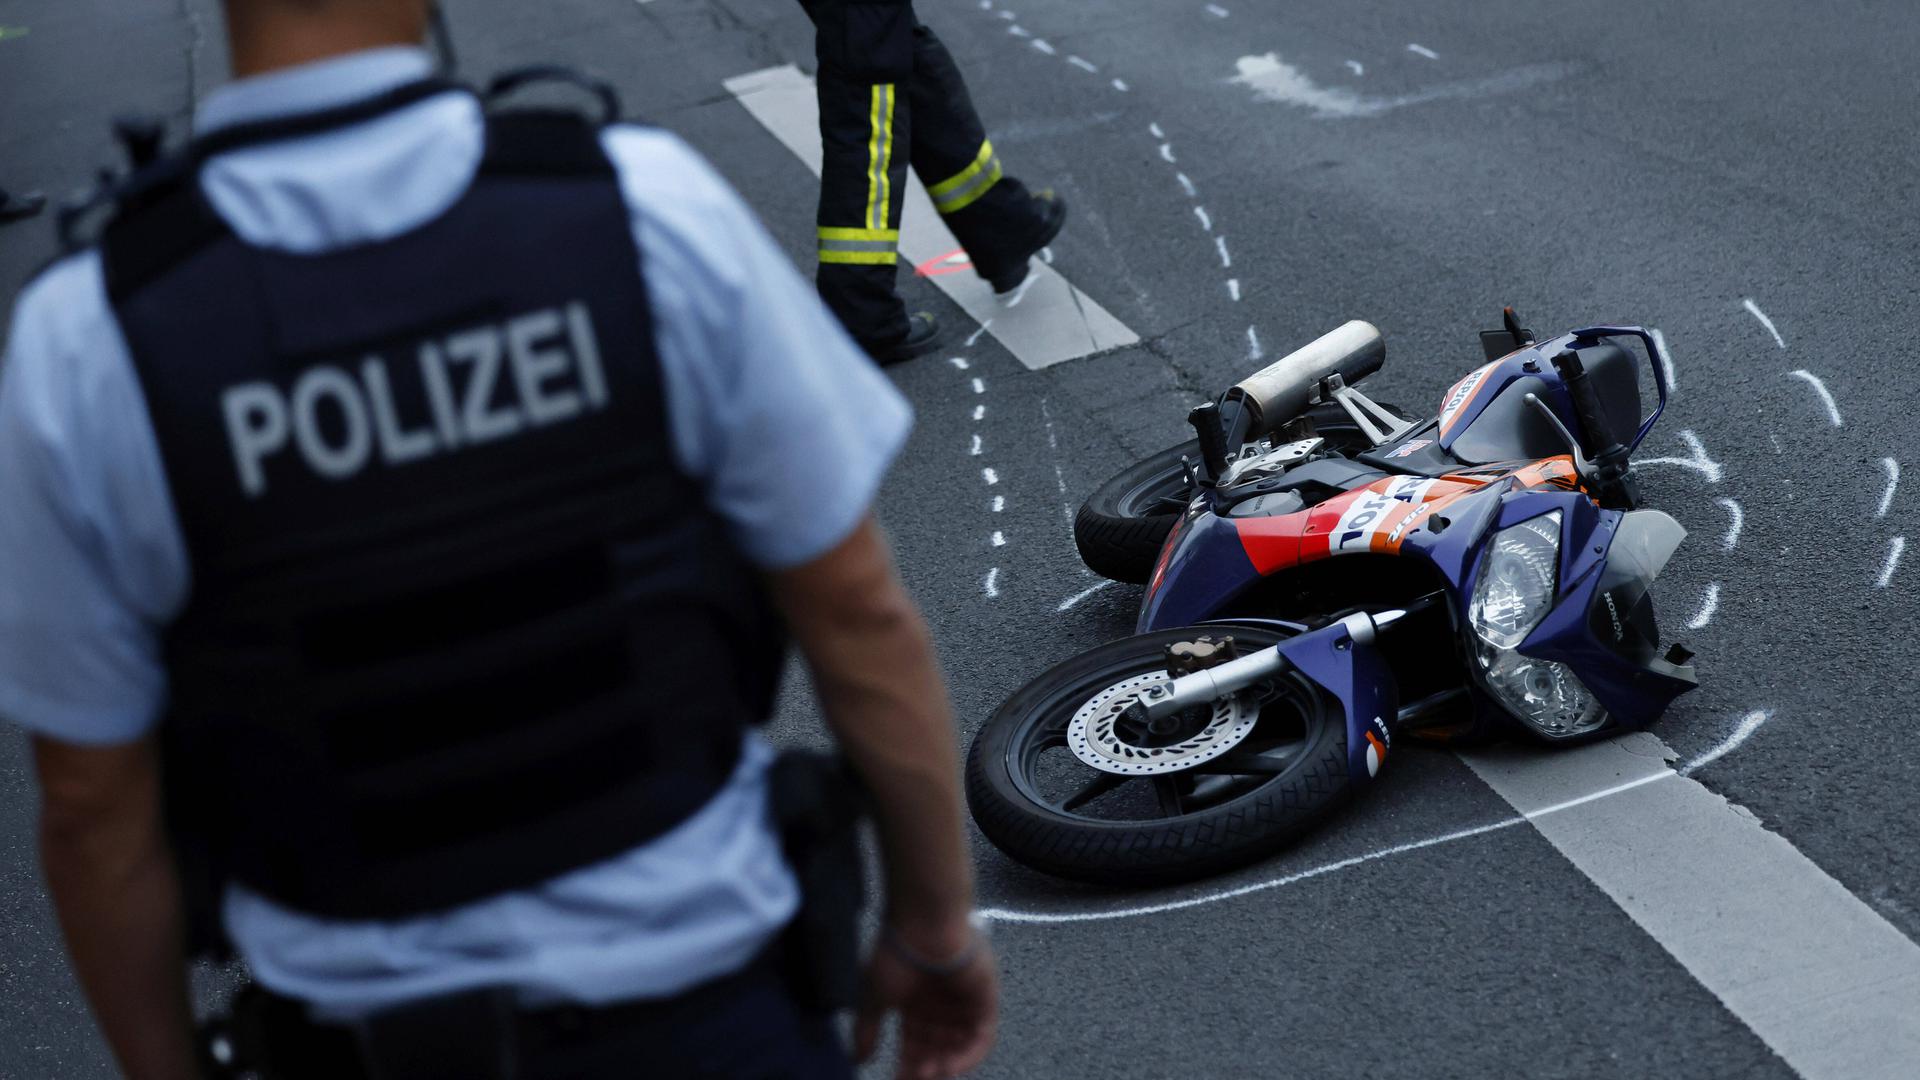 Kontrolle verloren: Im ersten Halbjahr 2022 sind in Baden-Württemberg 23 Biker tödlich verunglückt. Unfallursache ist oft eine zu hohe Geschwindigkeit.